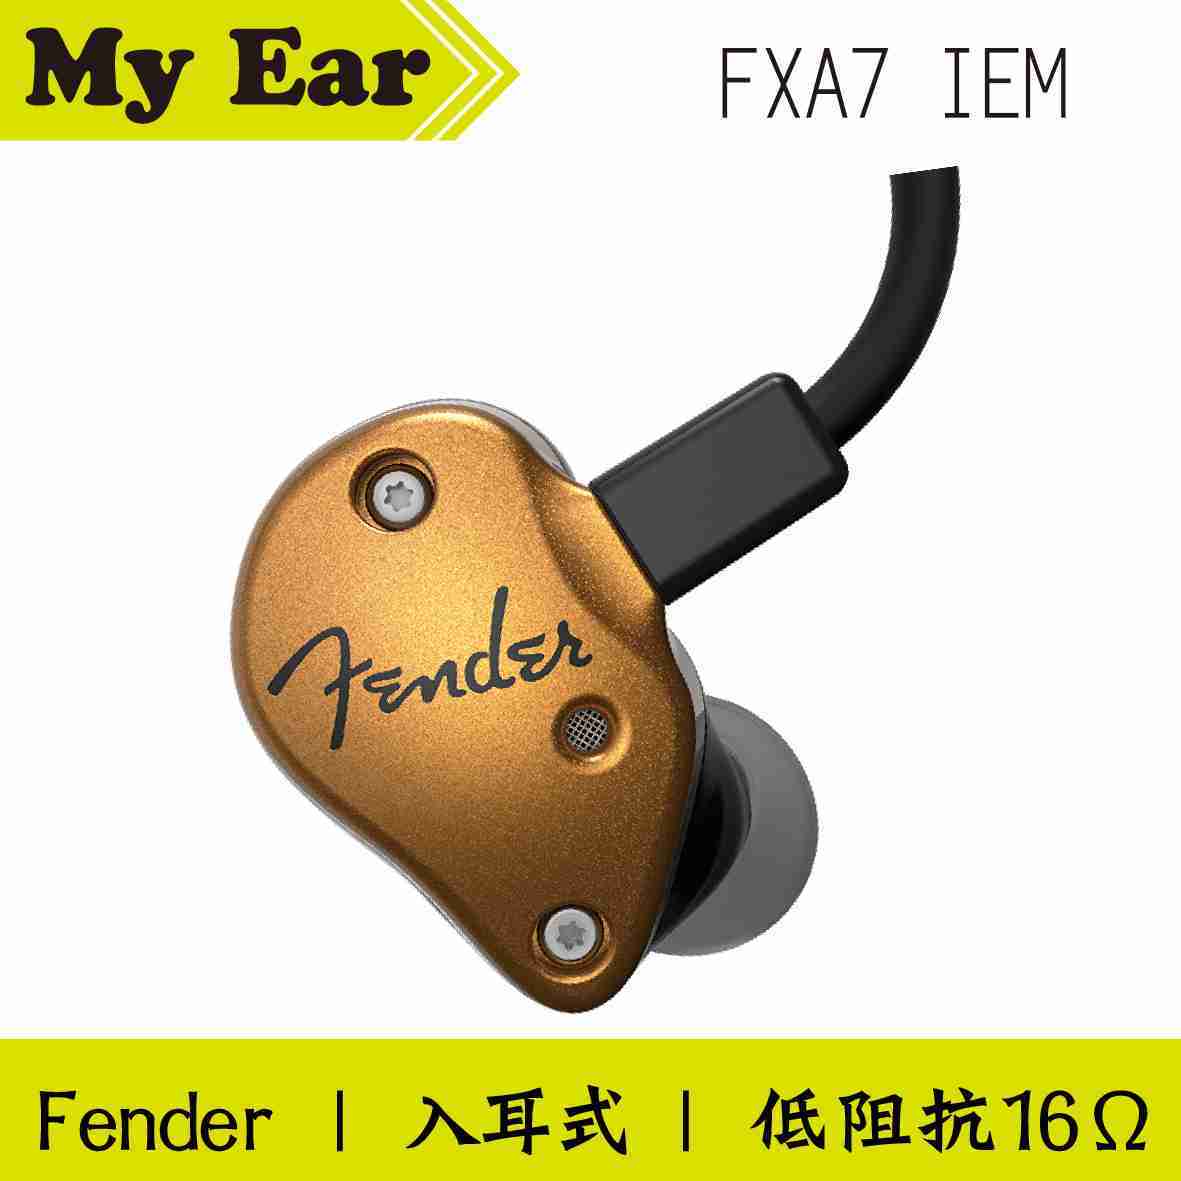 Fender FXA7 IEM 入耳式 監聽 耳機 金色 | My Ear耳機專門店